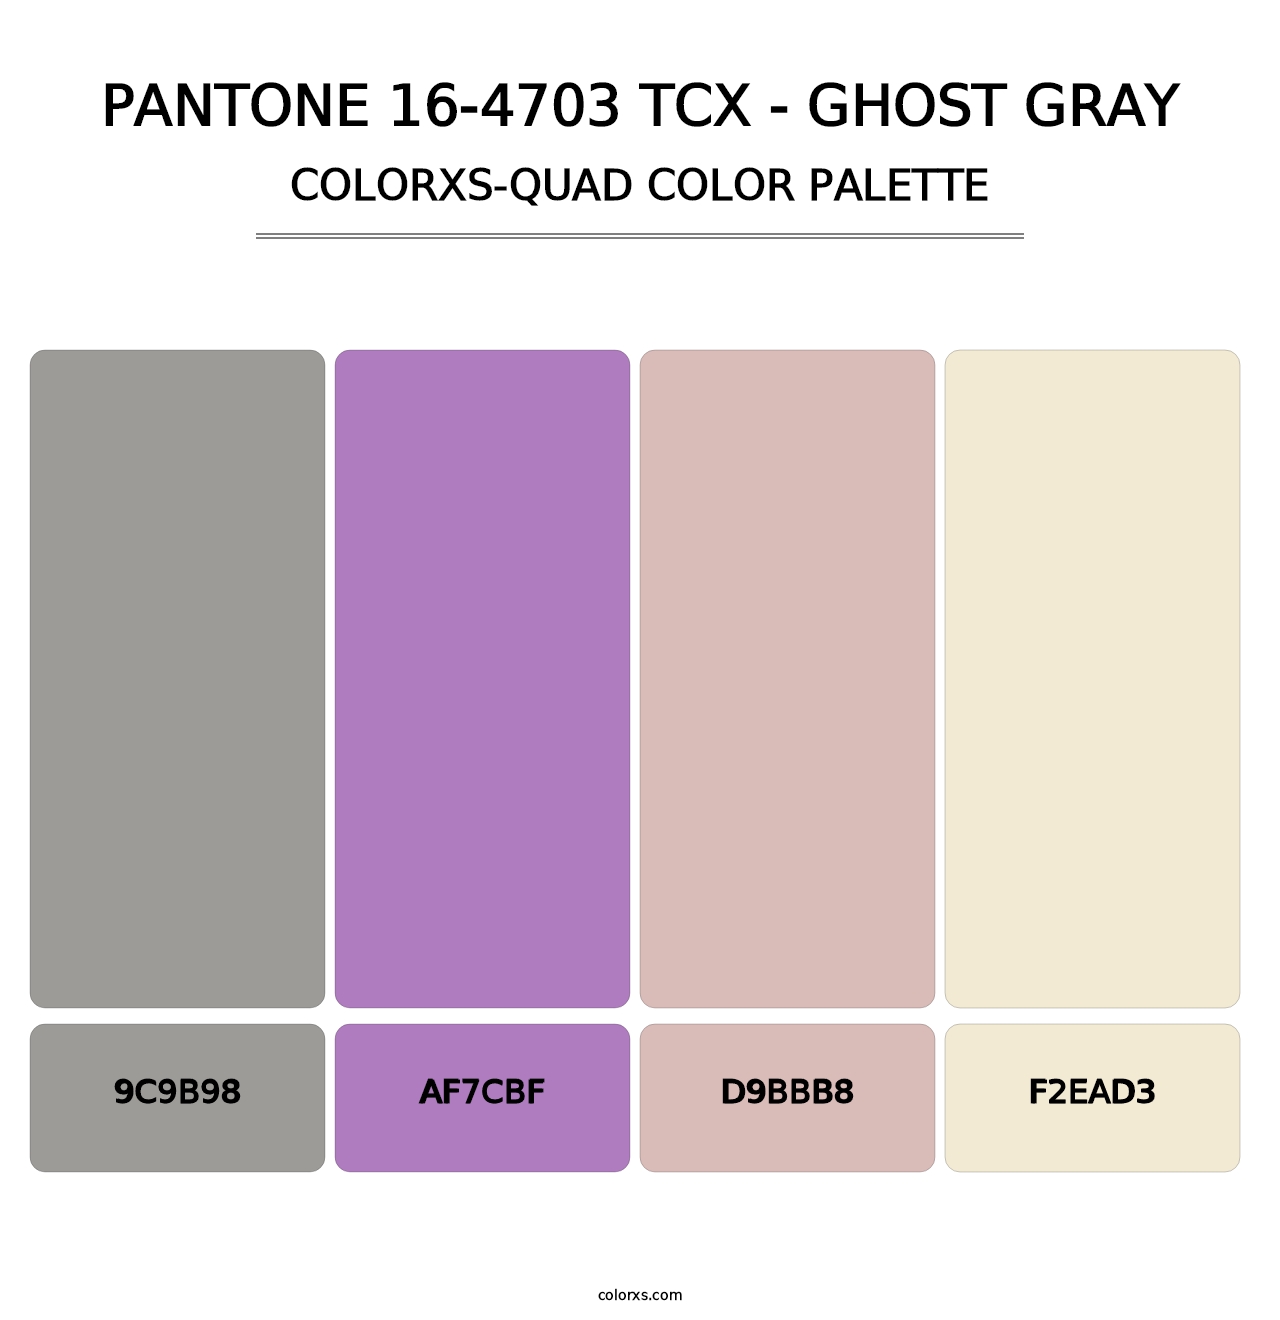 PANTONE 16-4703 TCX - Ghost Gray - Colorxs Quad Palette